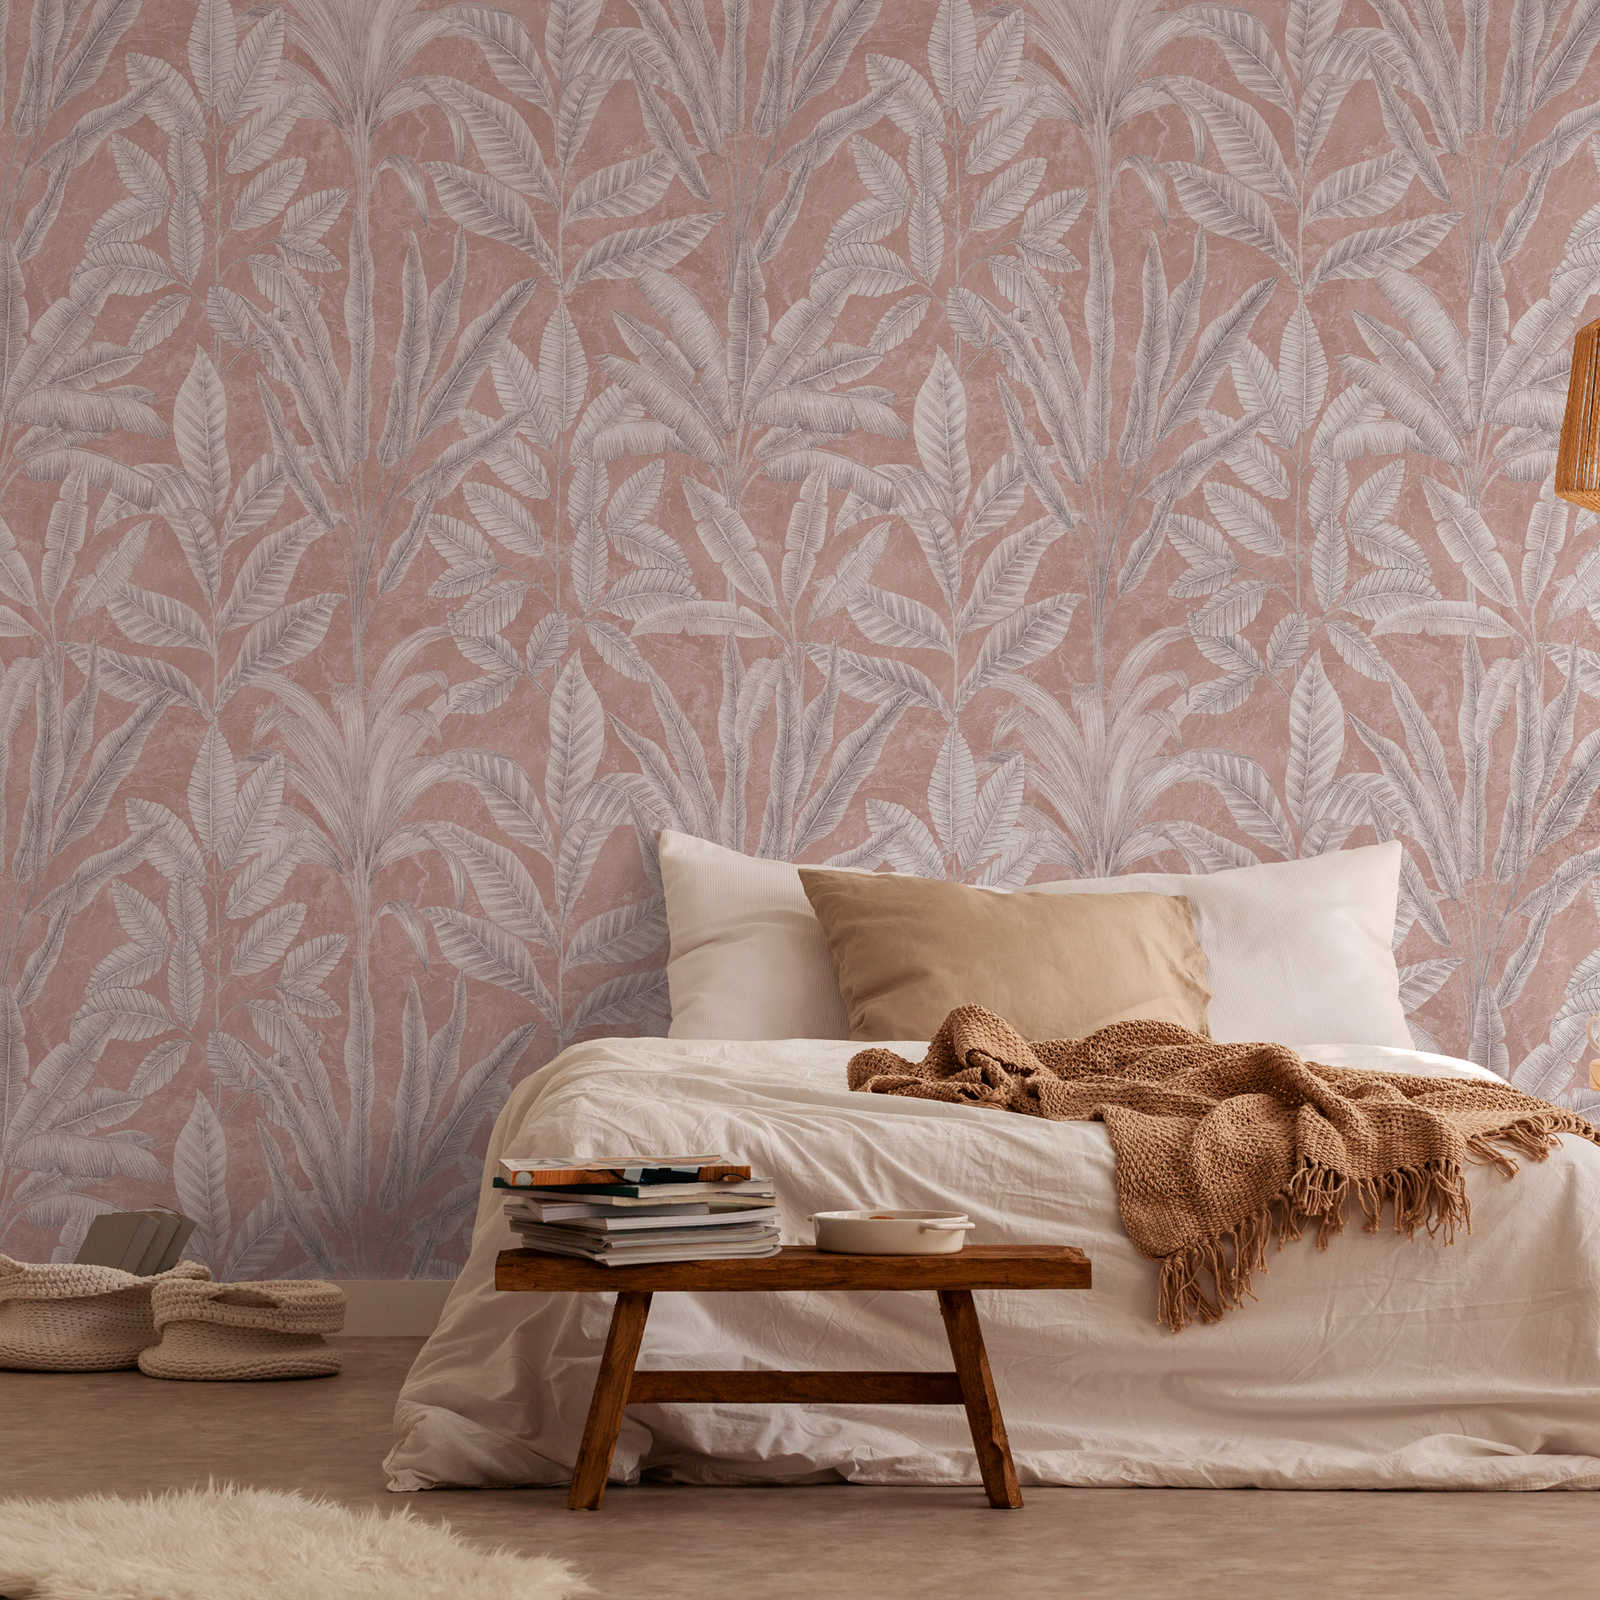 Papel pintado no tejido con grandes hojas en colores claros - rosa, gris, blanco
